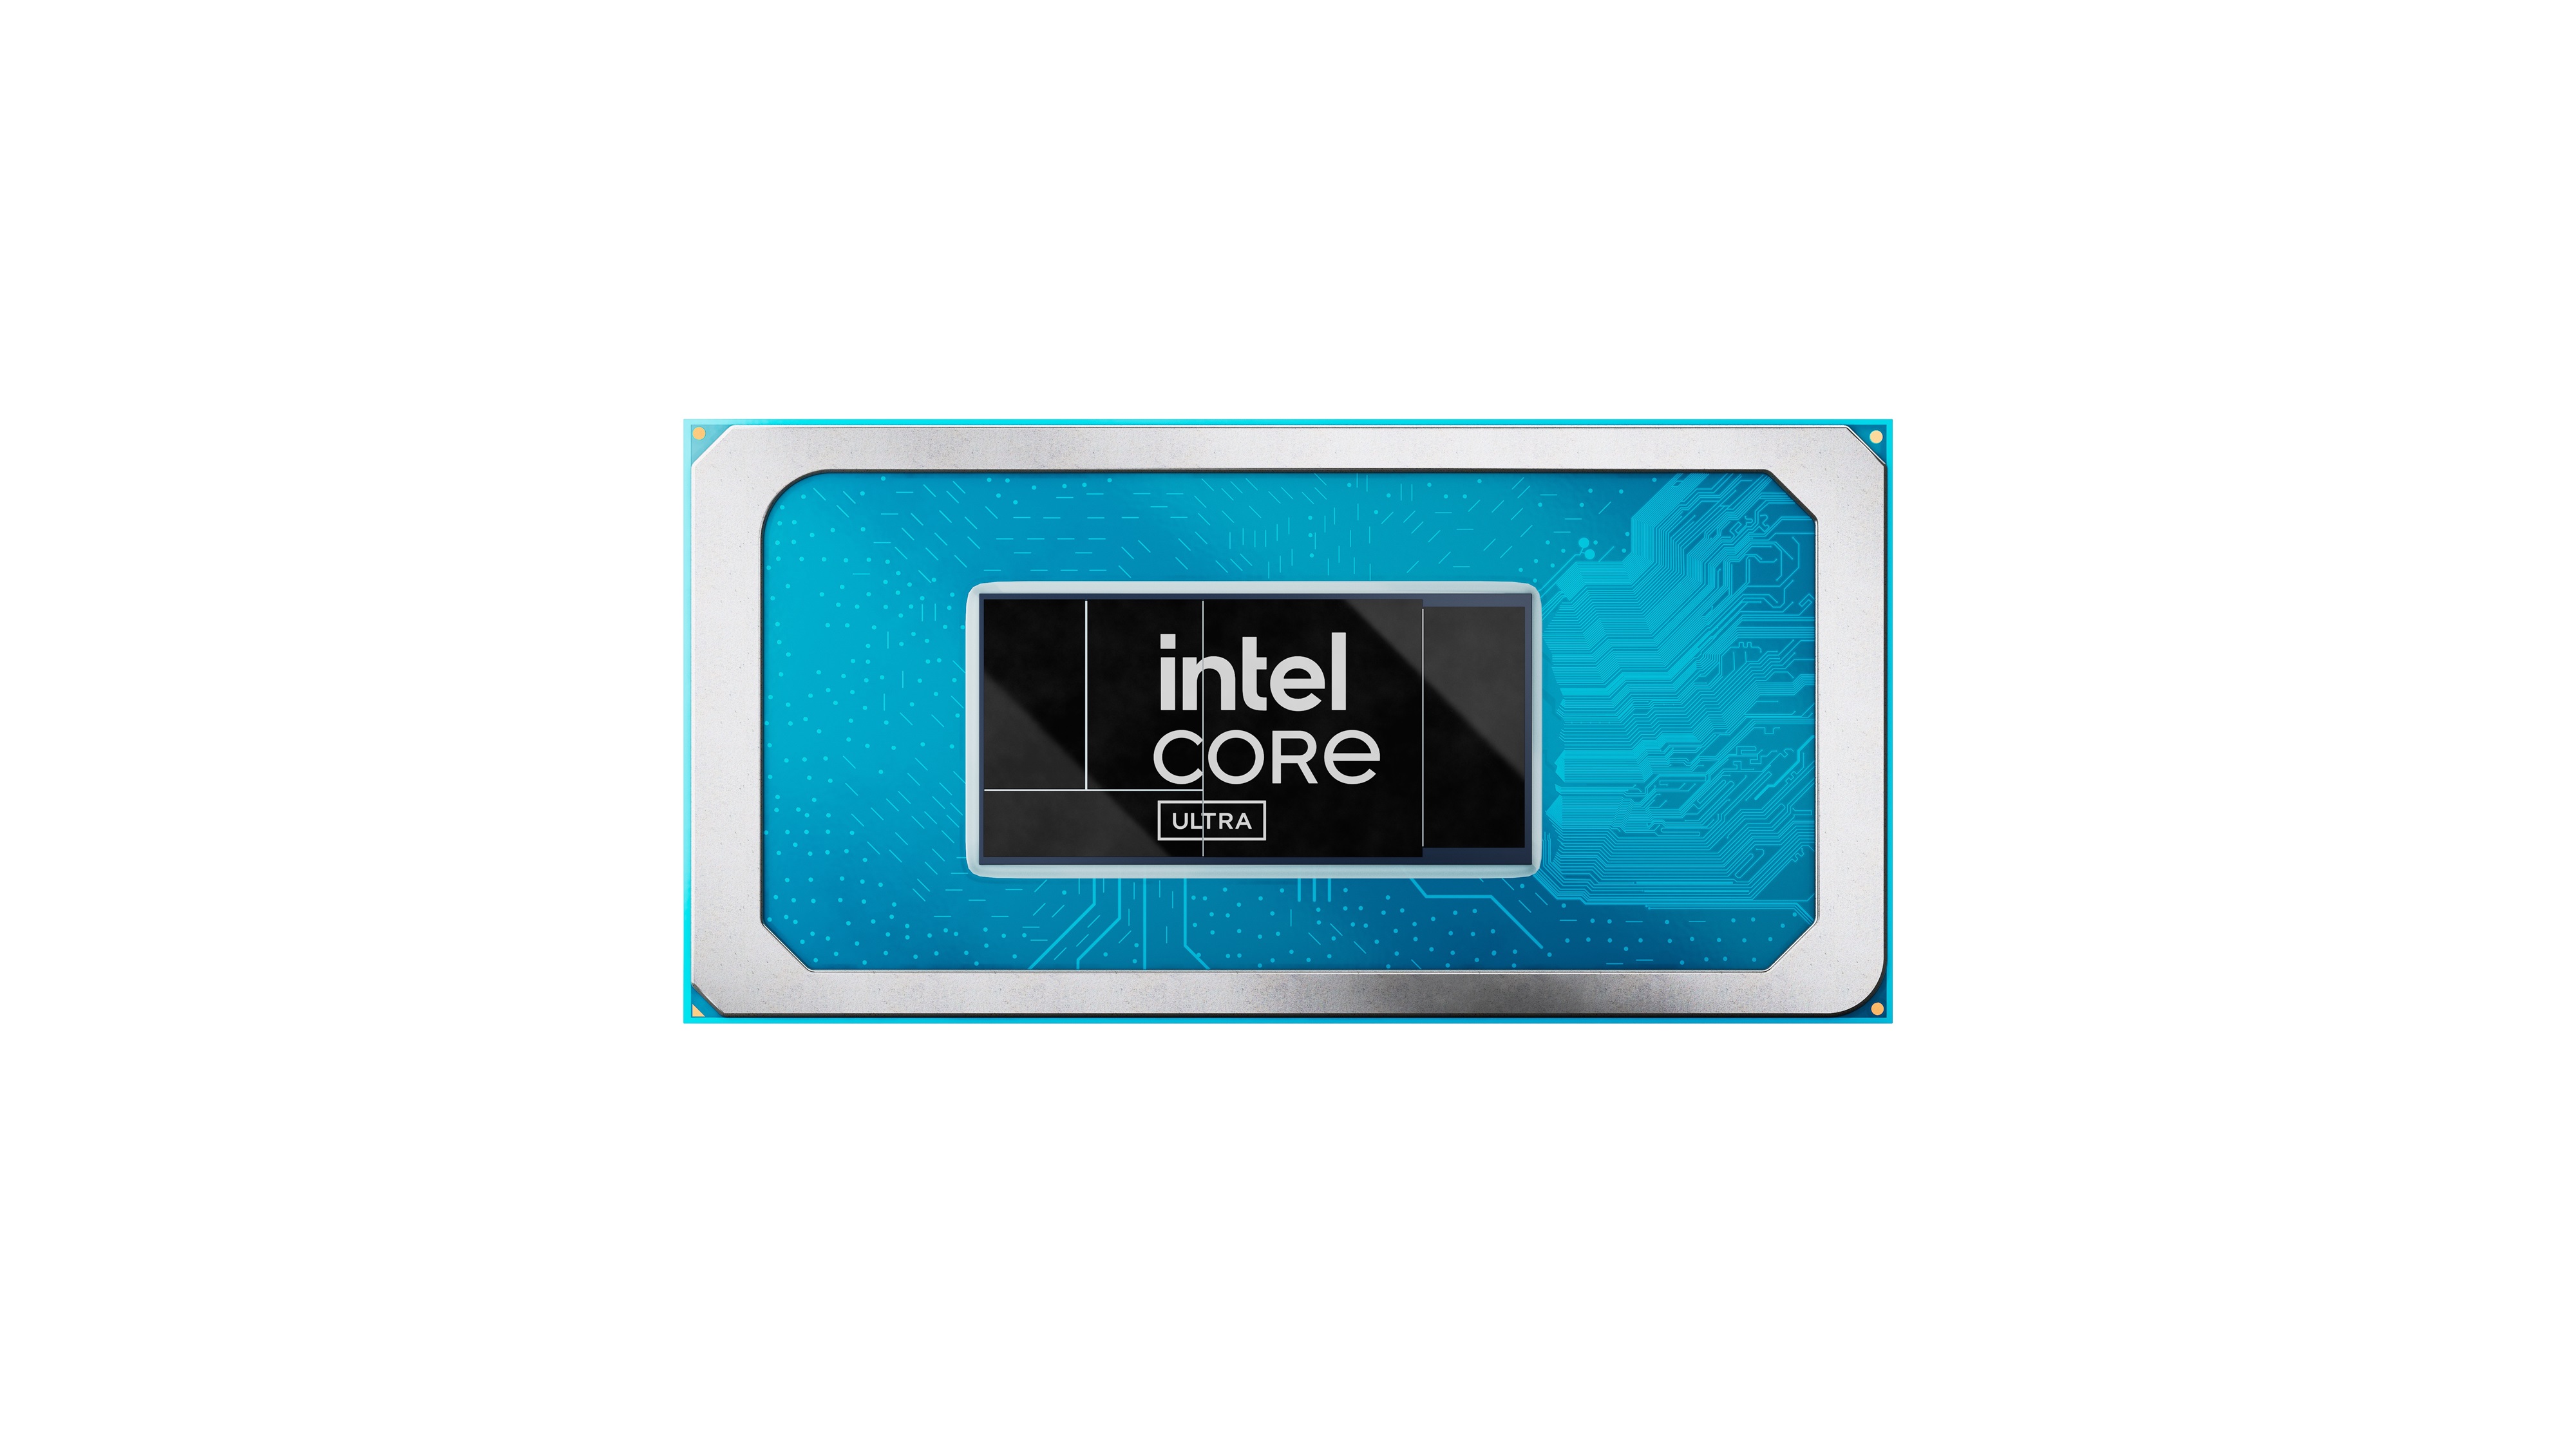 Immagine pubblicata in relazione al seguente contenuto: Intel rilascia Arc & Iris Xe Graphics Driver 31.0.101.5081/31.0.101.5122 WHQL | Nome immagine: news35118_Intel-Core-Ultra_1.jpg